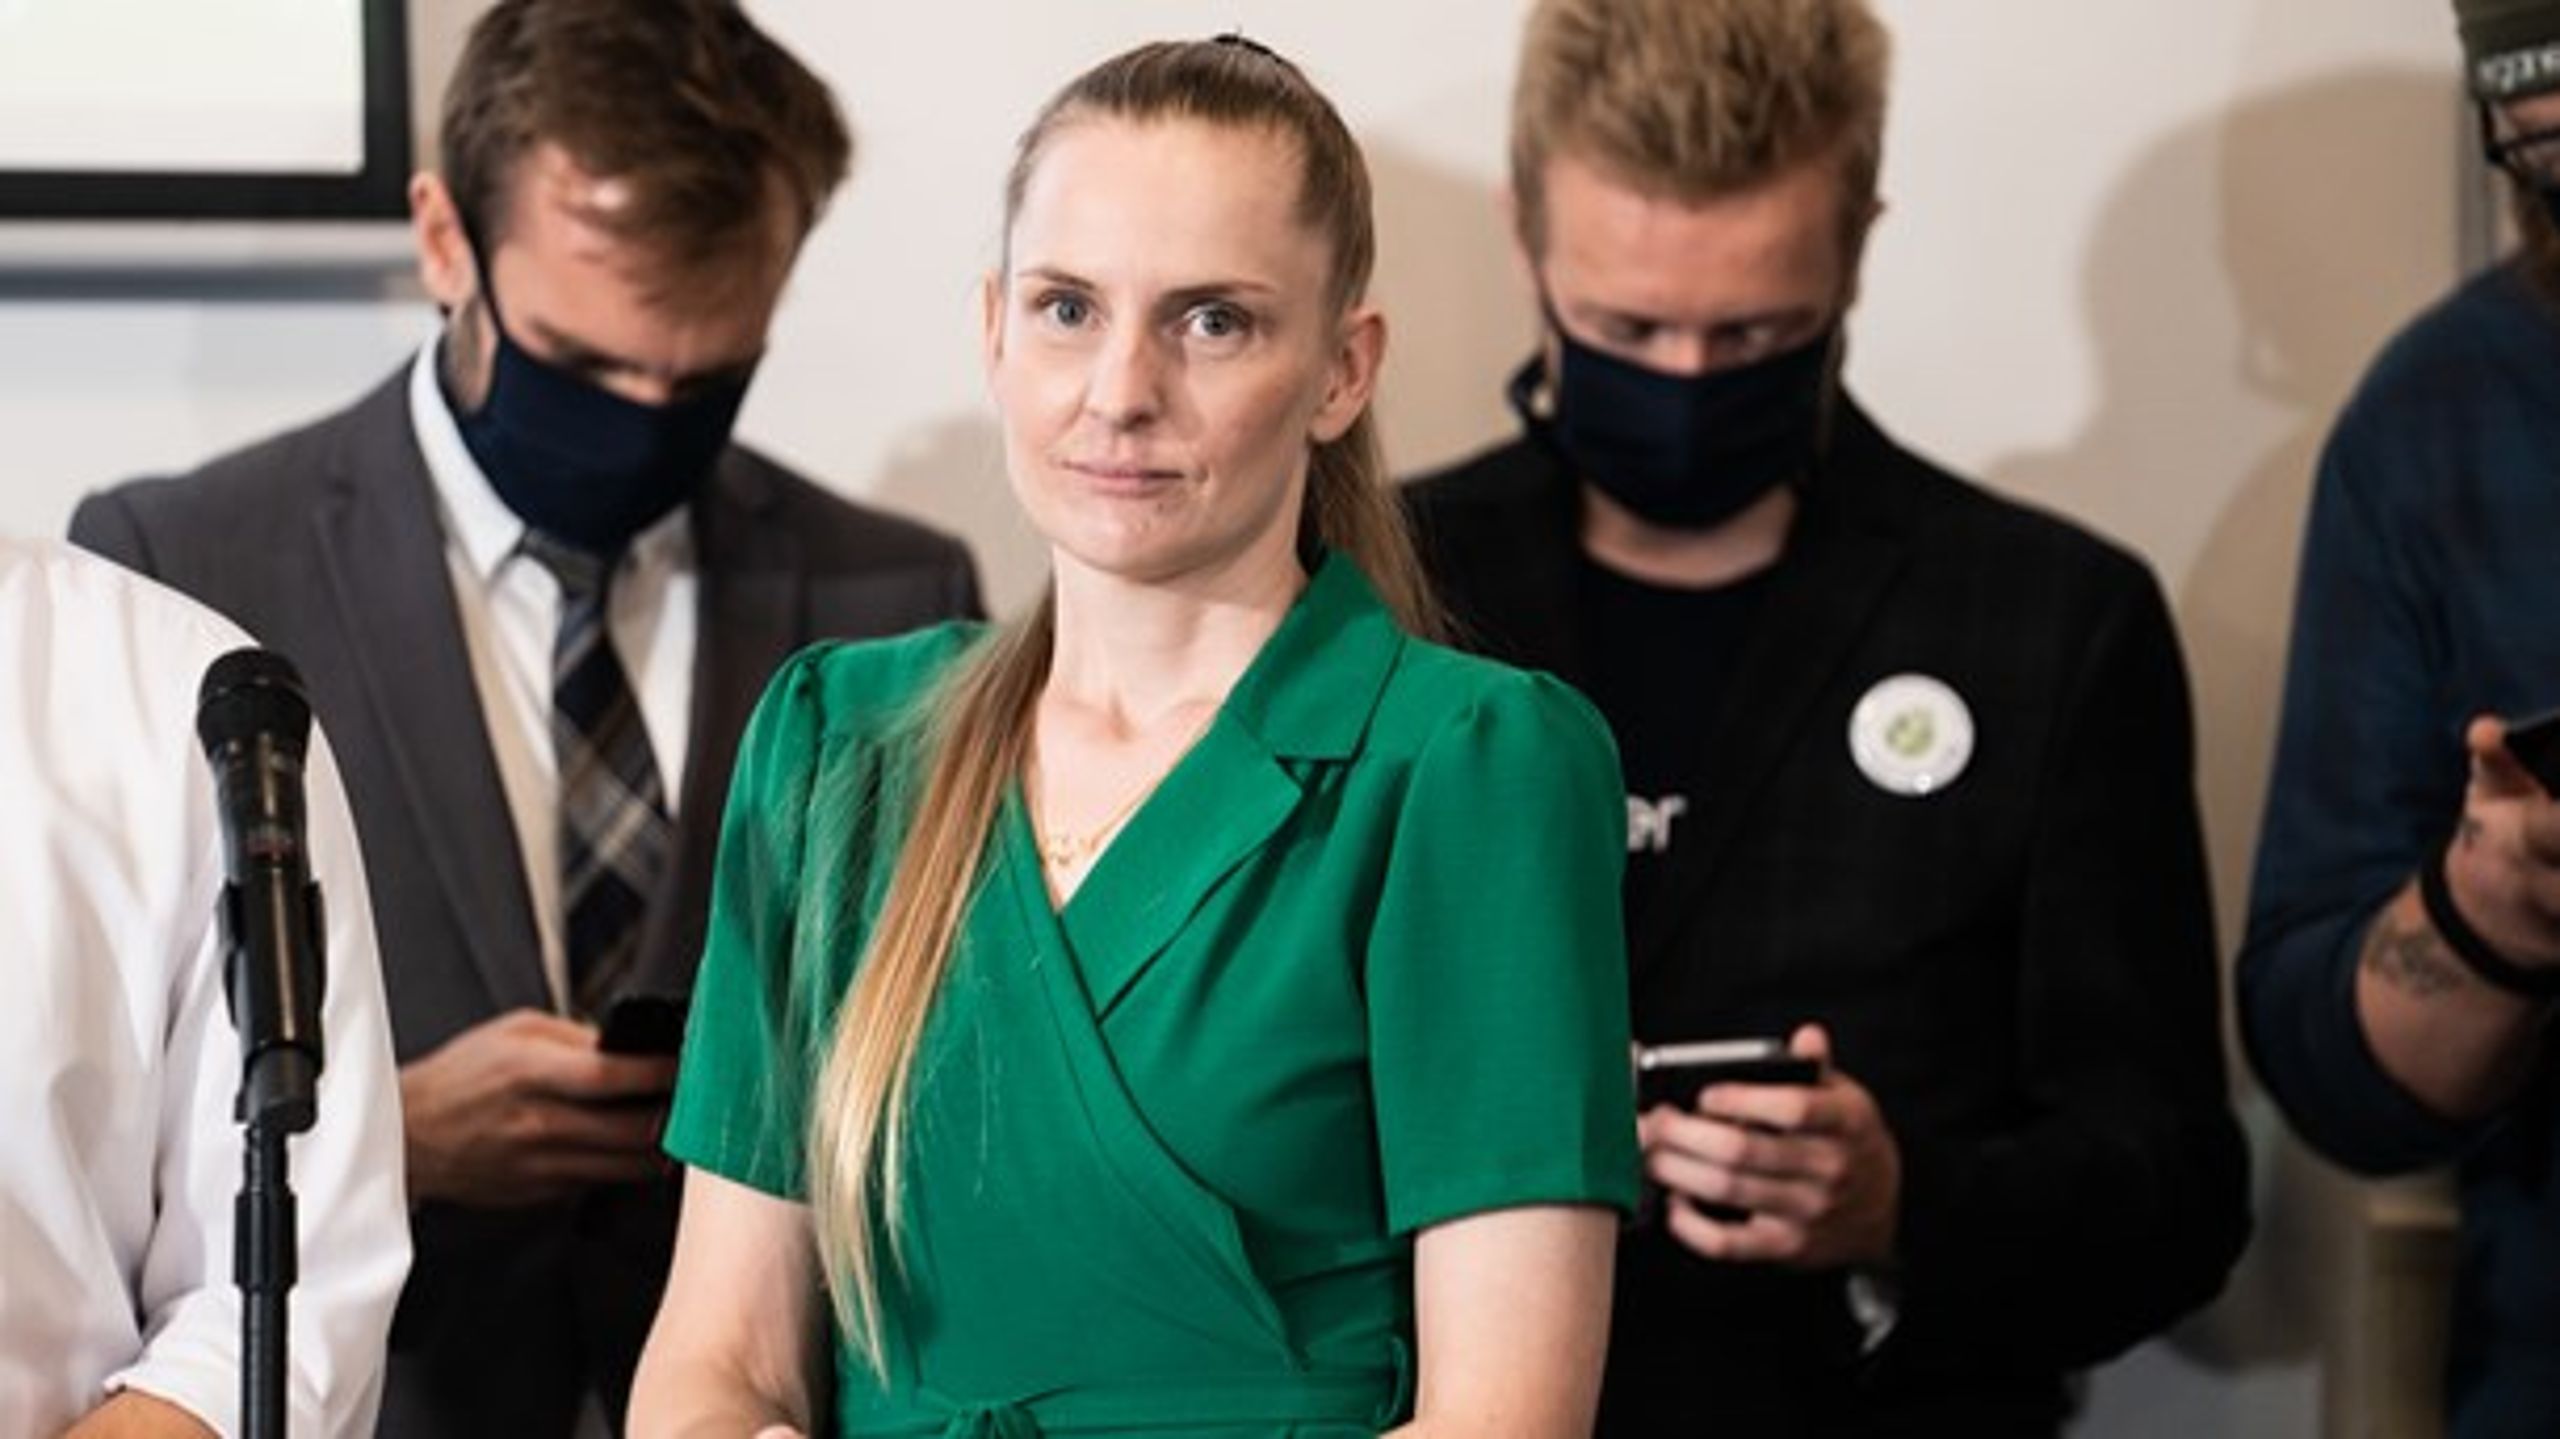 Veganerpartiet og Lisel Vad Olsson har indsamlet de 20.000 vælgererklæringer, det kræver at stille op til Folketinget.